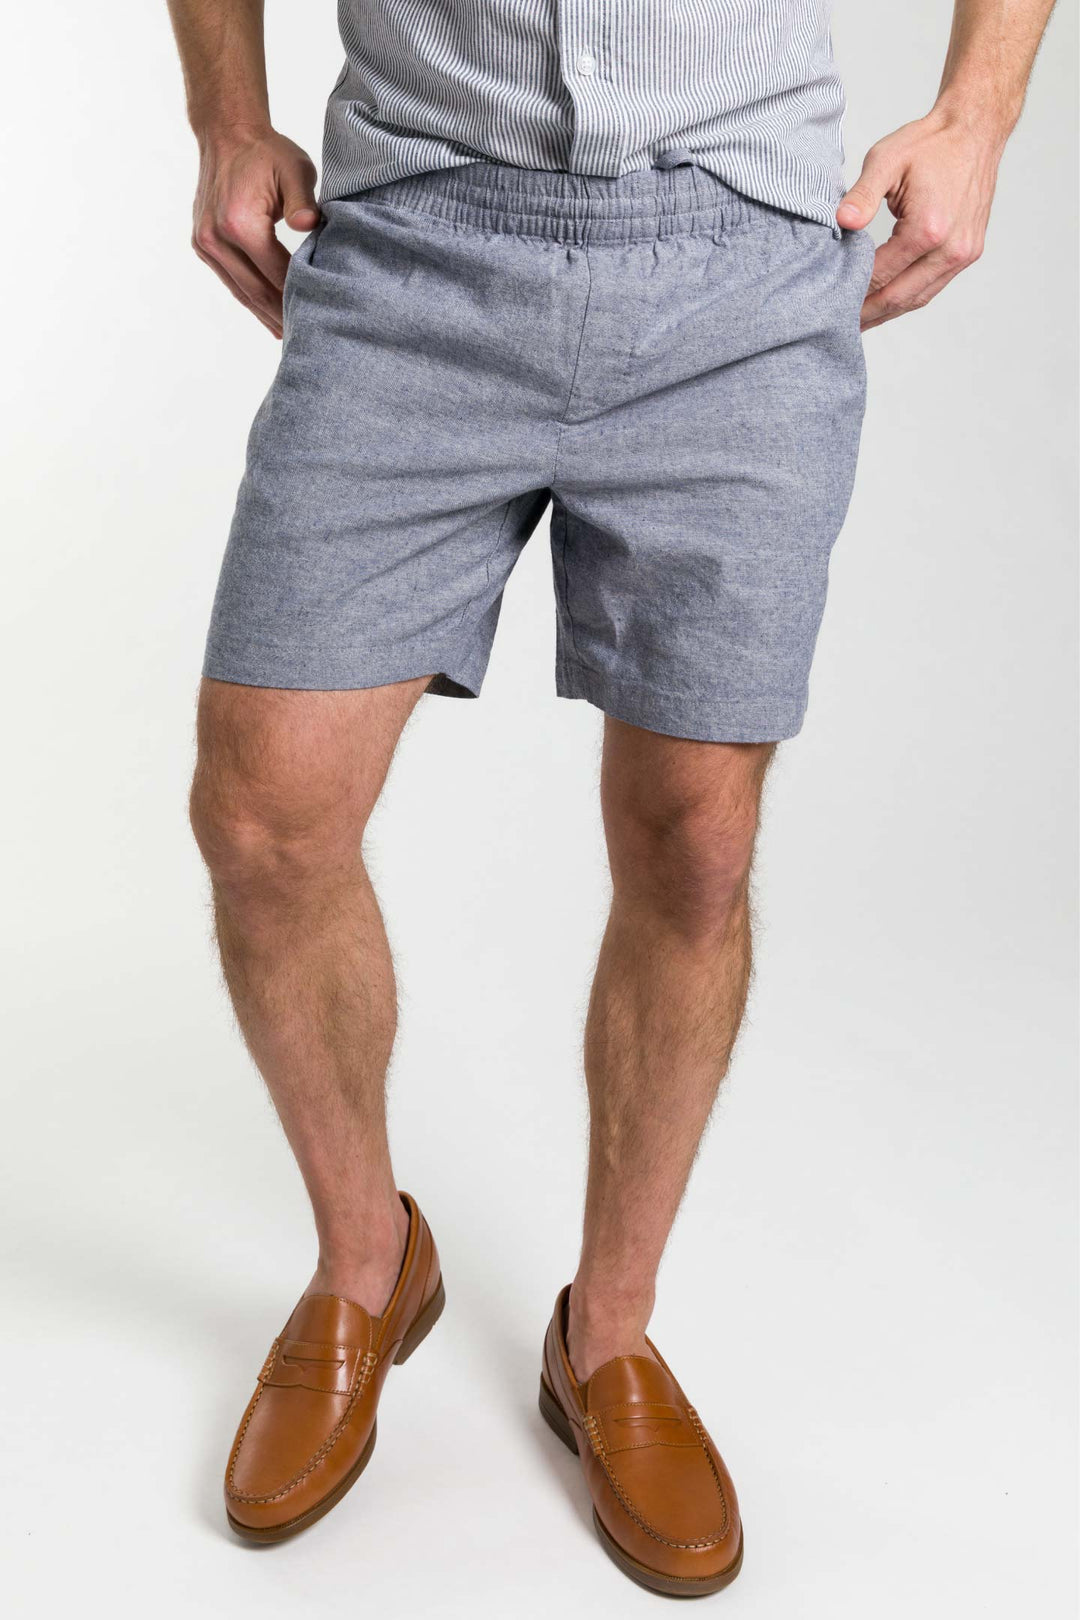 Buy Blue Linen Short for Short Men | Ash & Erie   Linen Short